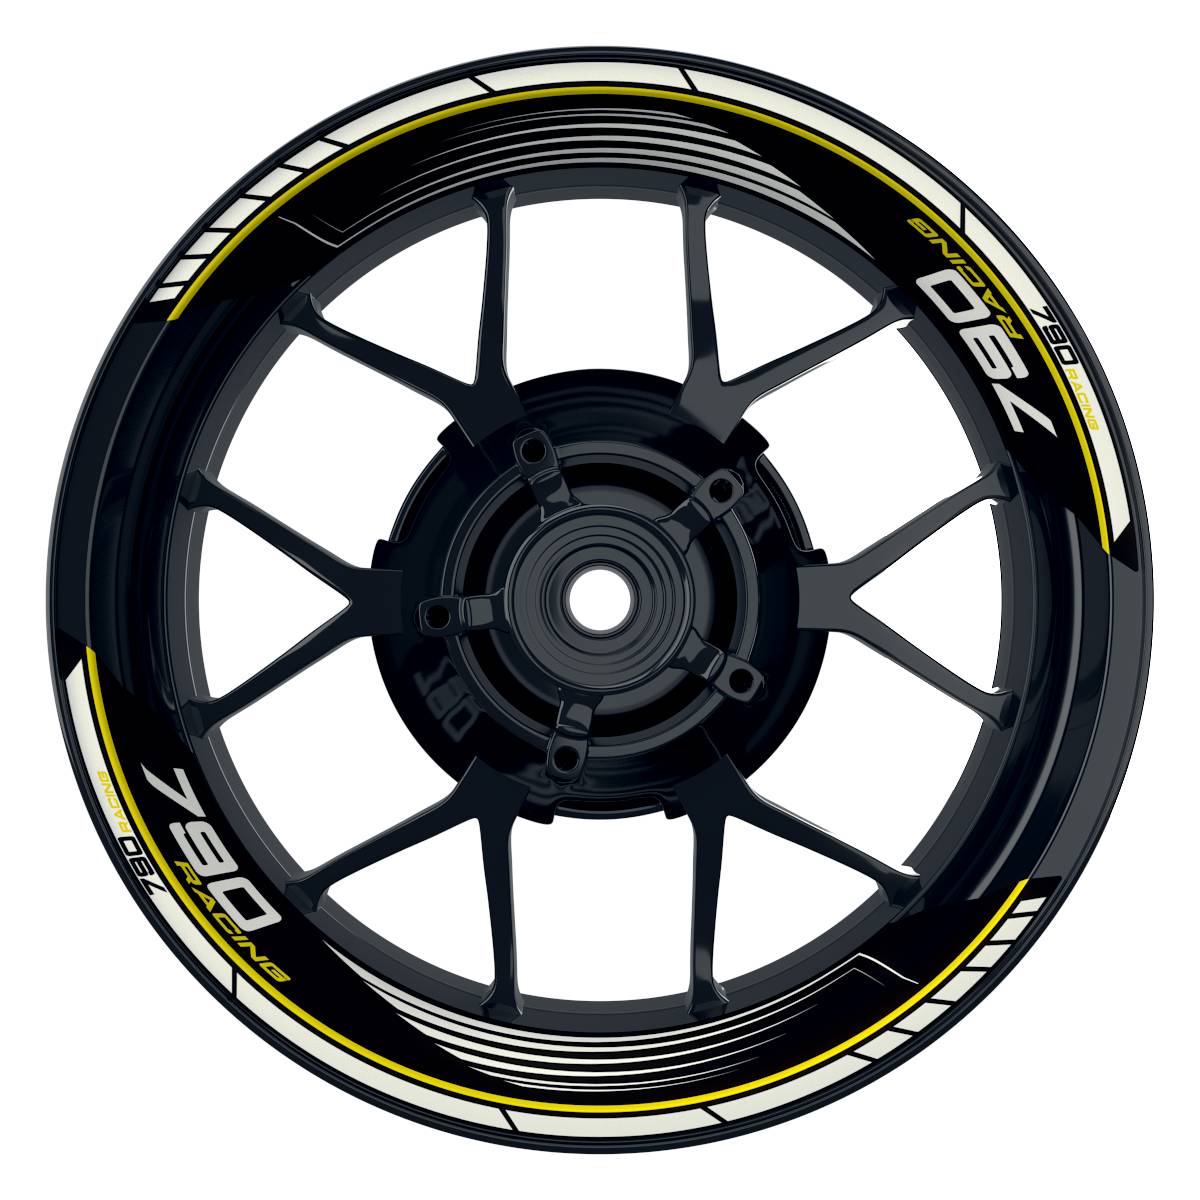 KTM Racing 790 SAW schwarz gelb Frontansicht